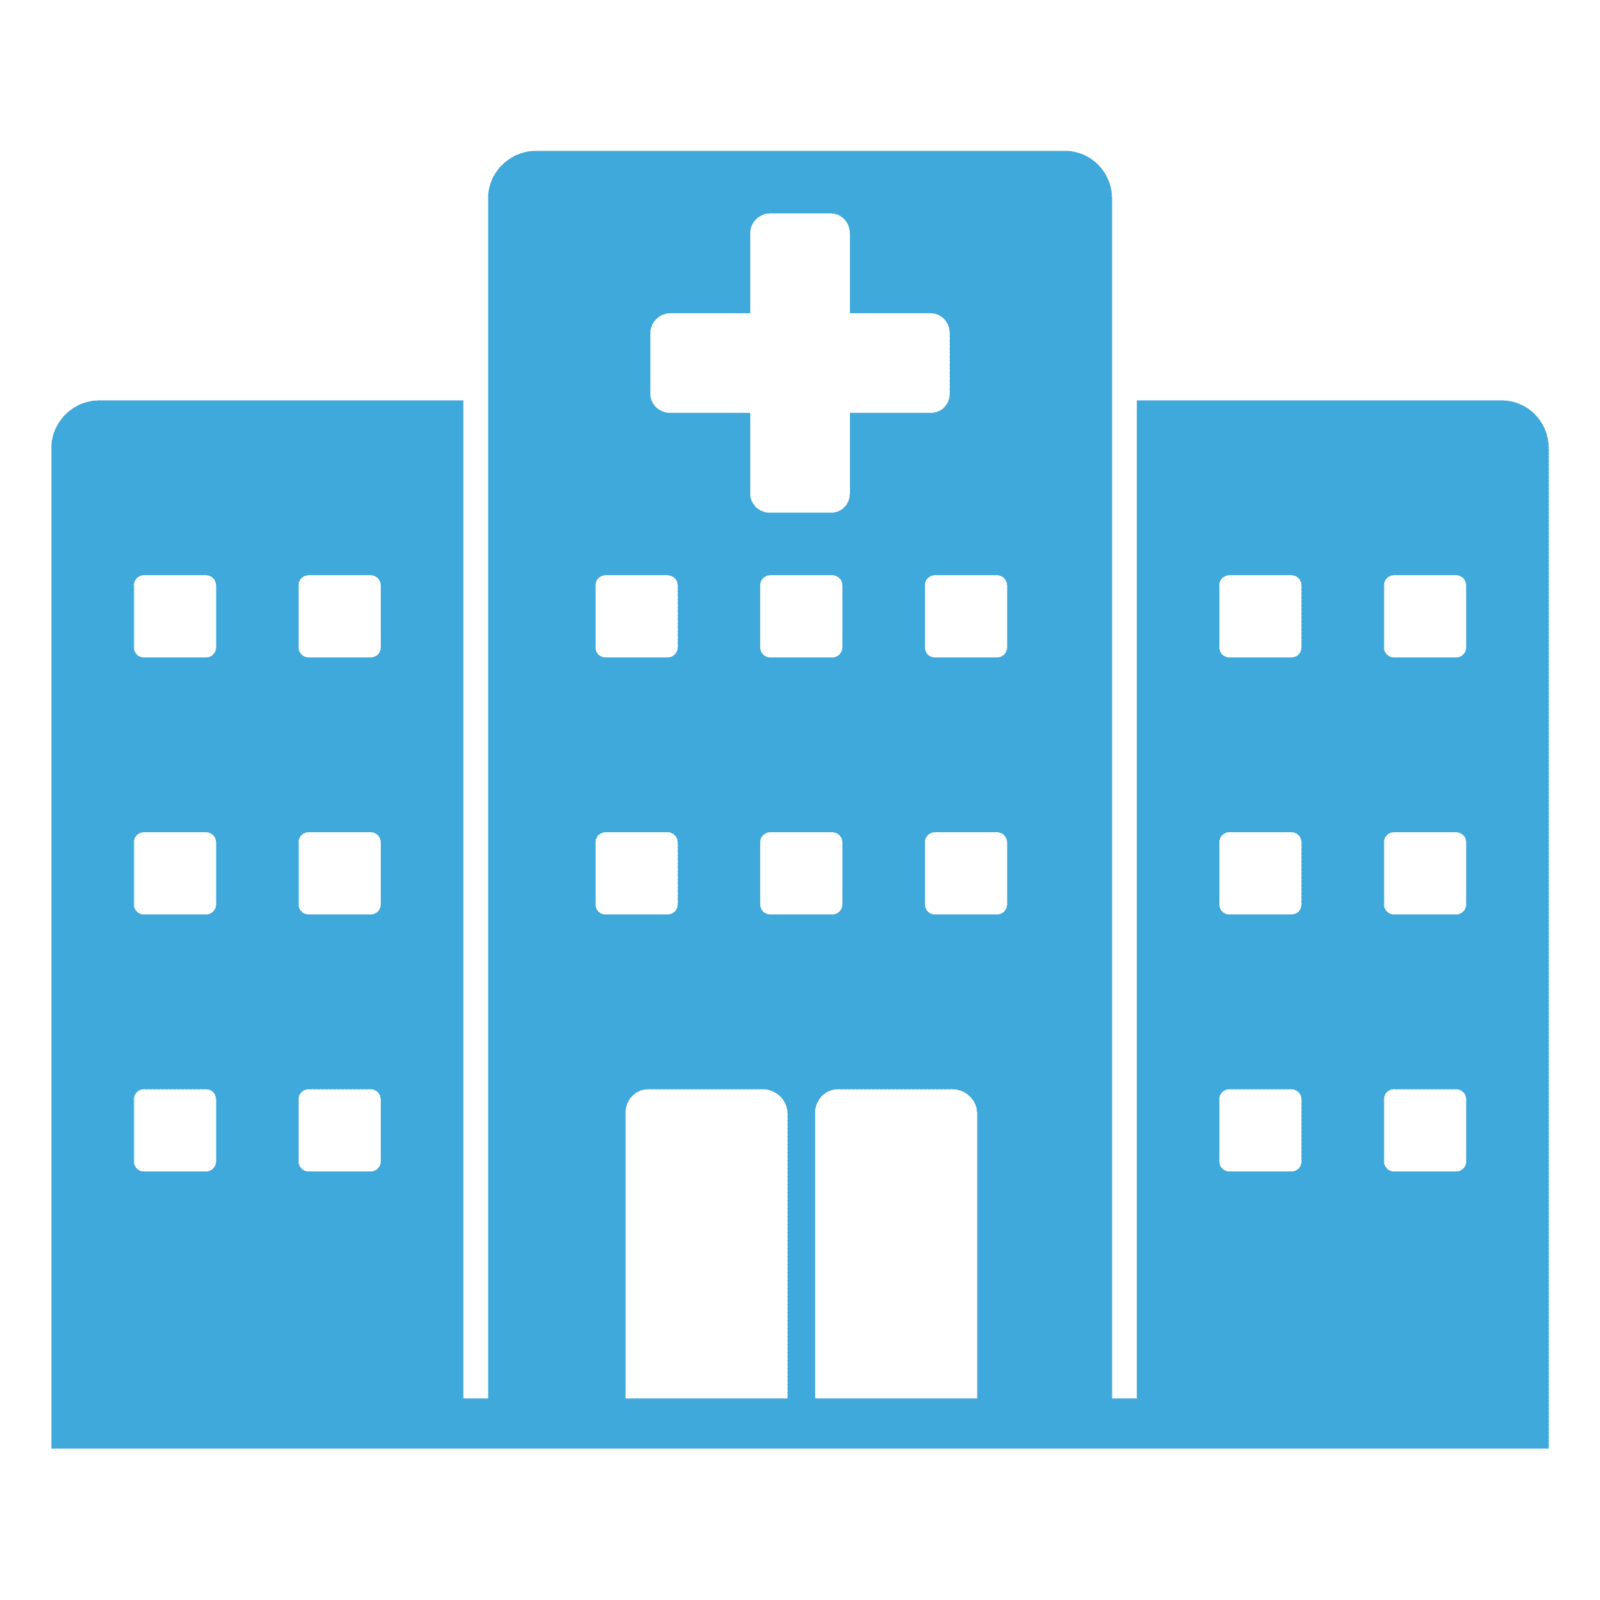 Clinics & Hospitals